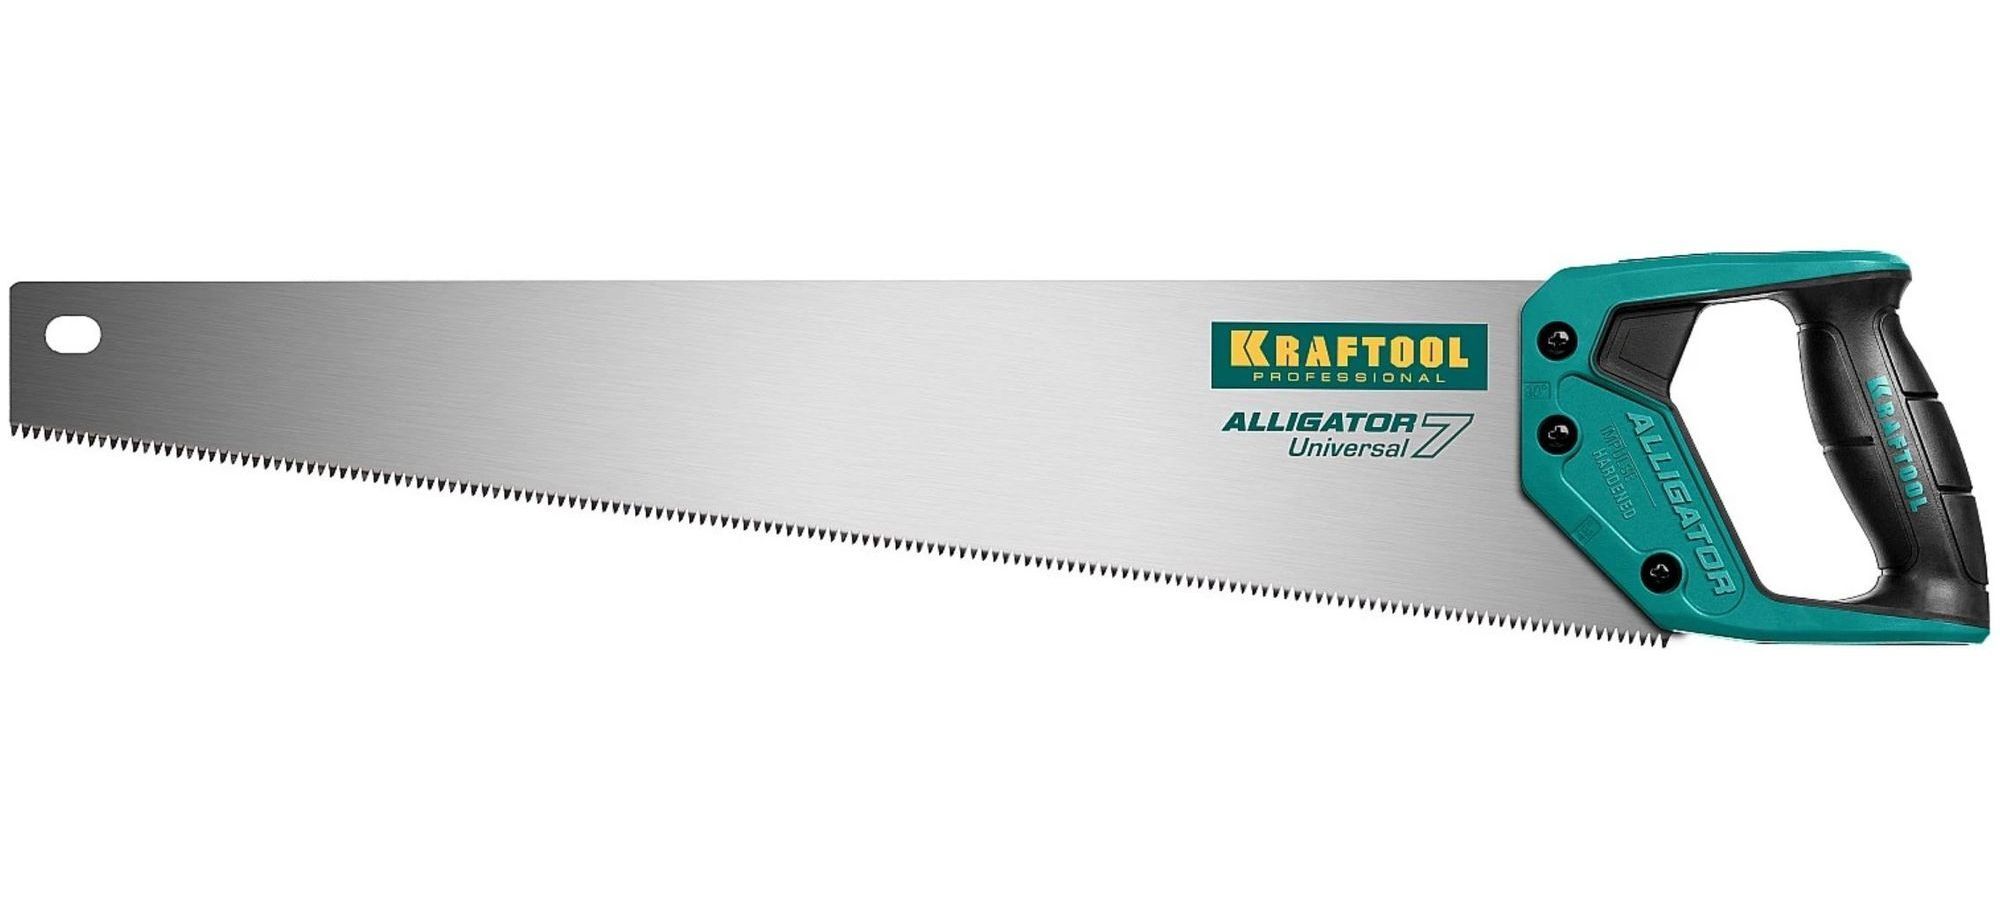 Ножовка универсальная ?Alligator Universal 7?, 550 мм, 7 TPI 3D зуб. KRAFTOOL Kraftool